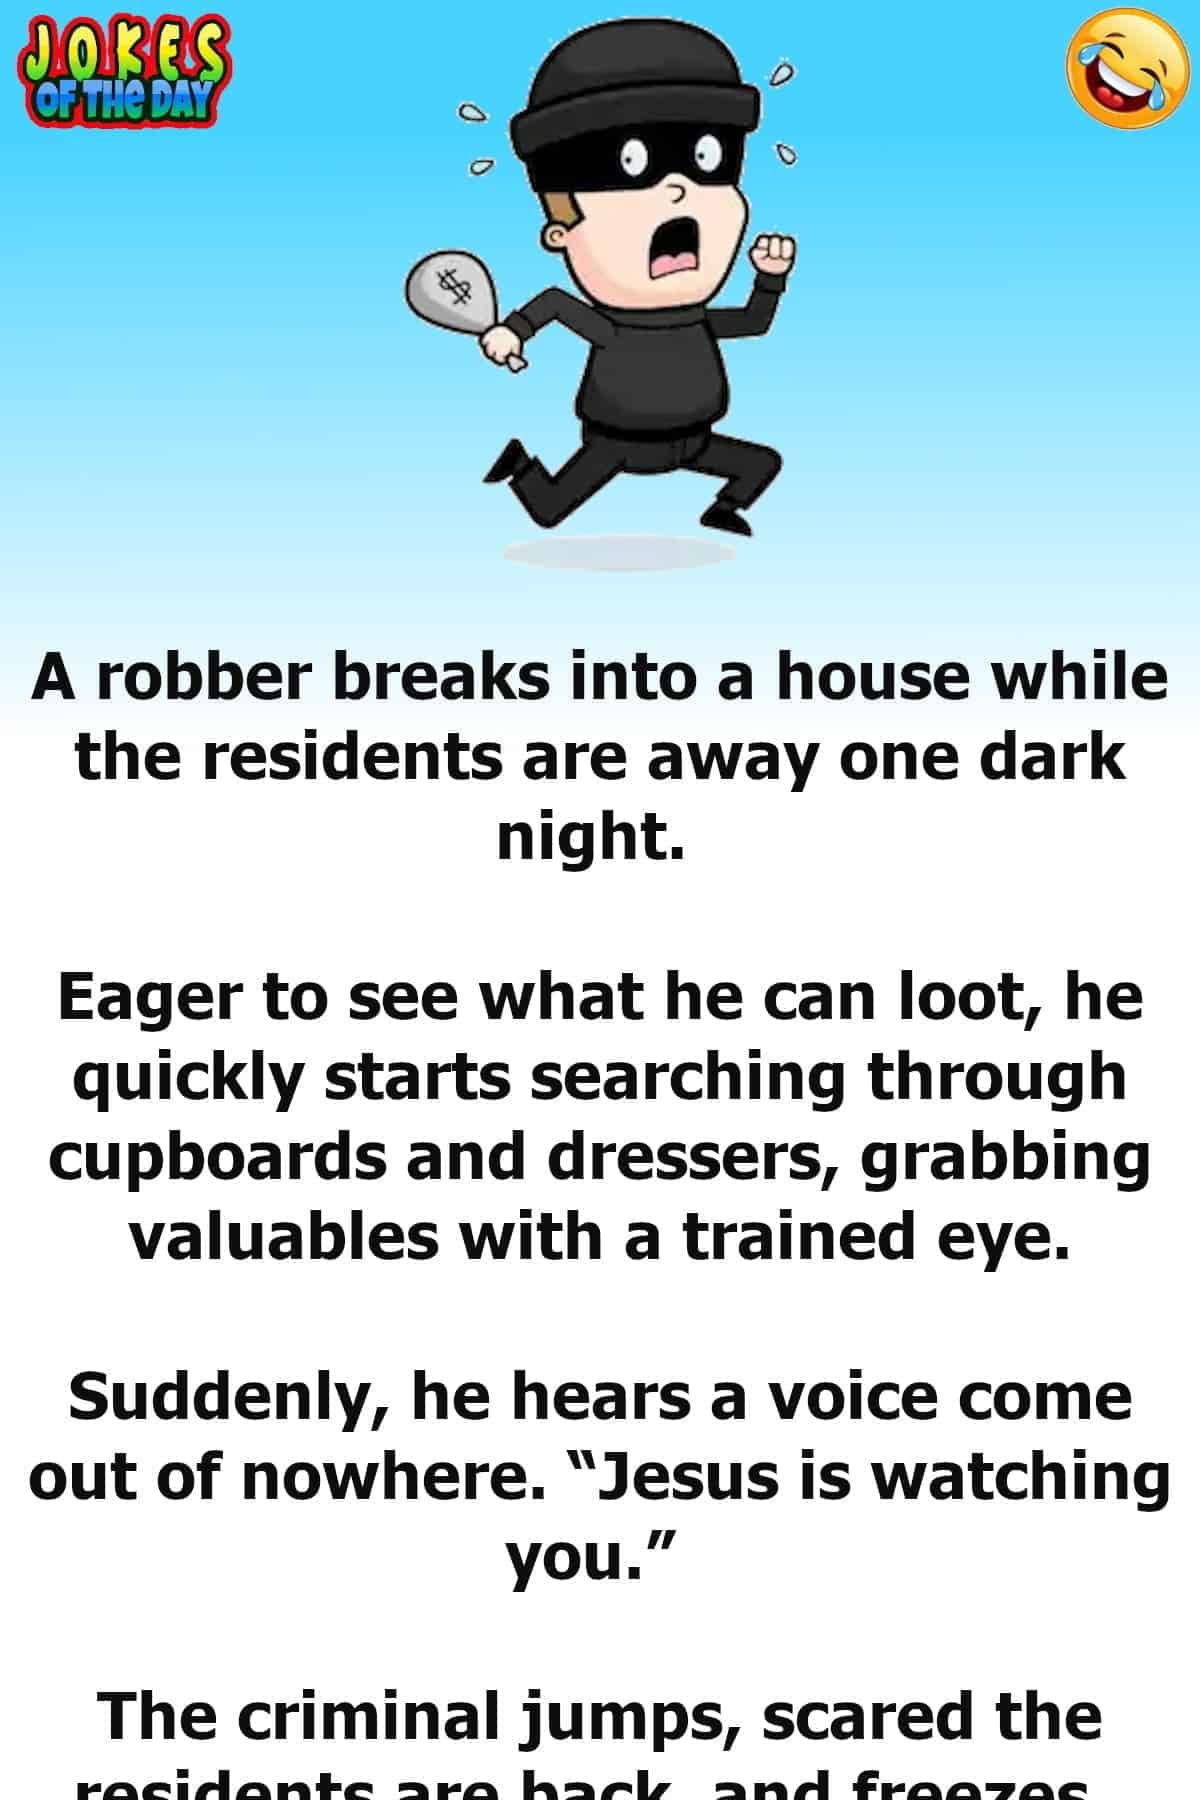 Funny Joke - The burglar is shocked when he hears a voice